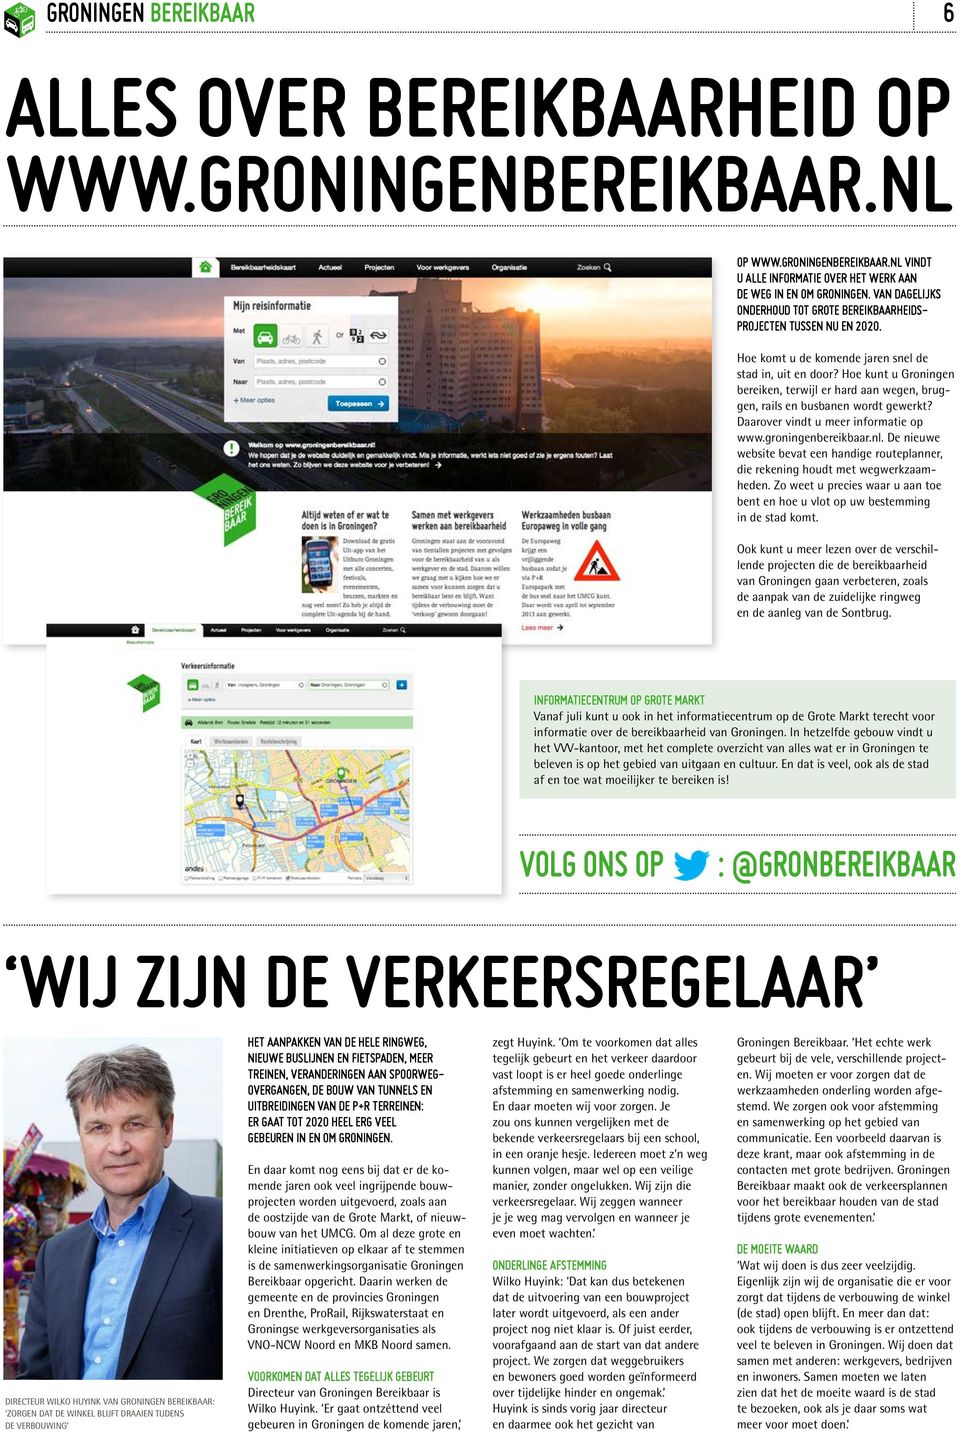 Hoe kunt u Groningen bereiken, terwijl er hard aan wegen, bruggen, rails en busbanen wordt gewerkt? Daarover vindt u meer informatie op www.groningenbereikbaar.nl.